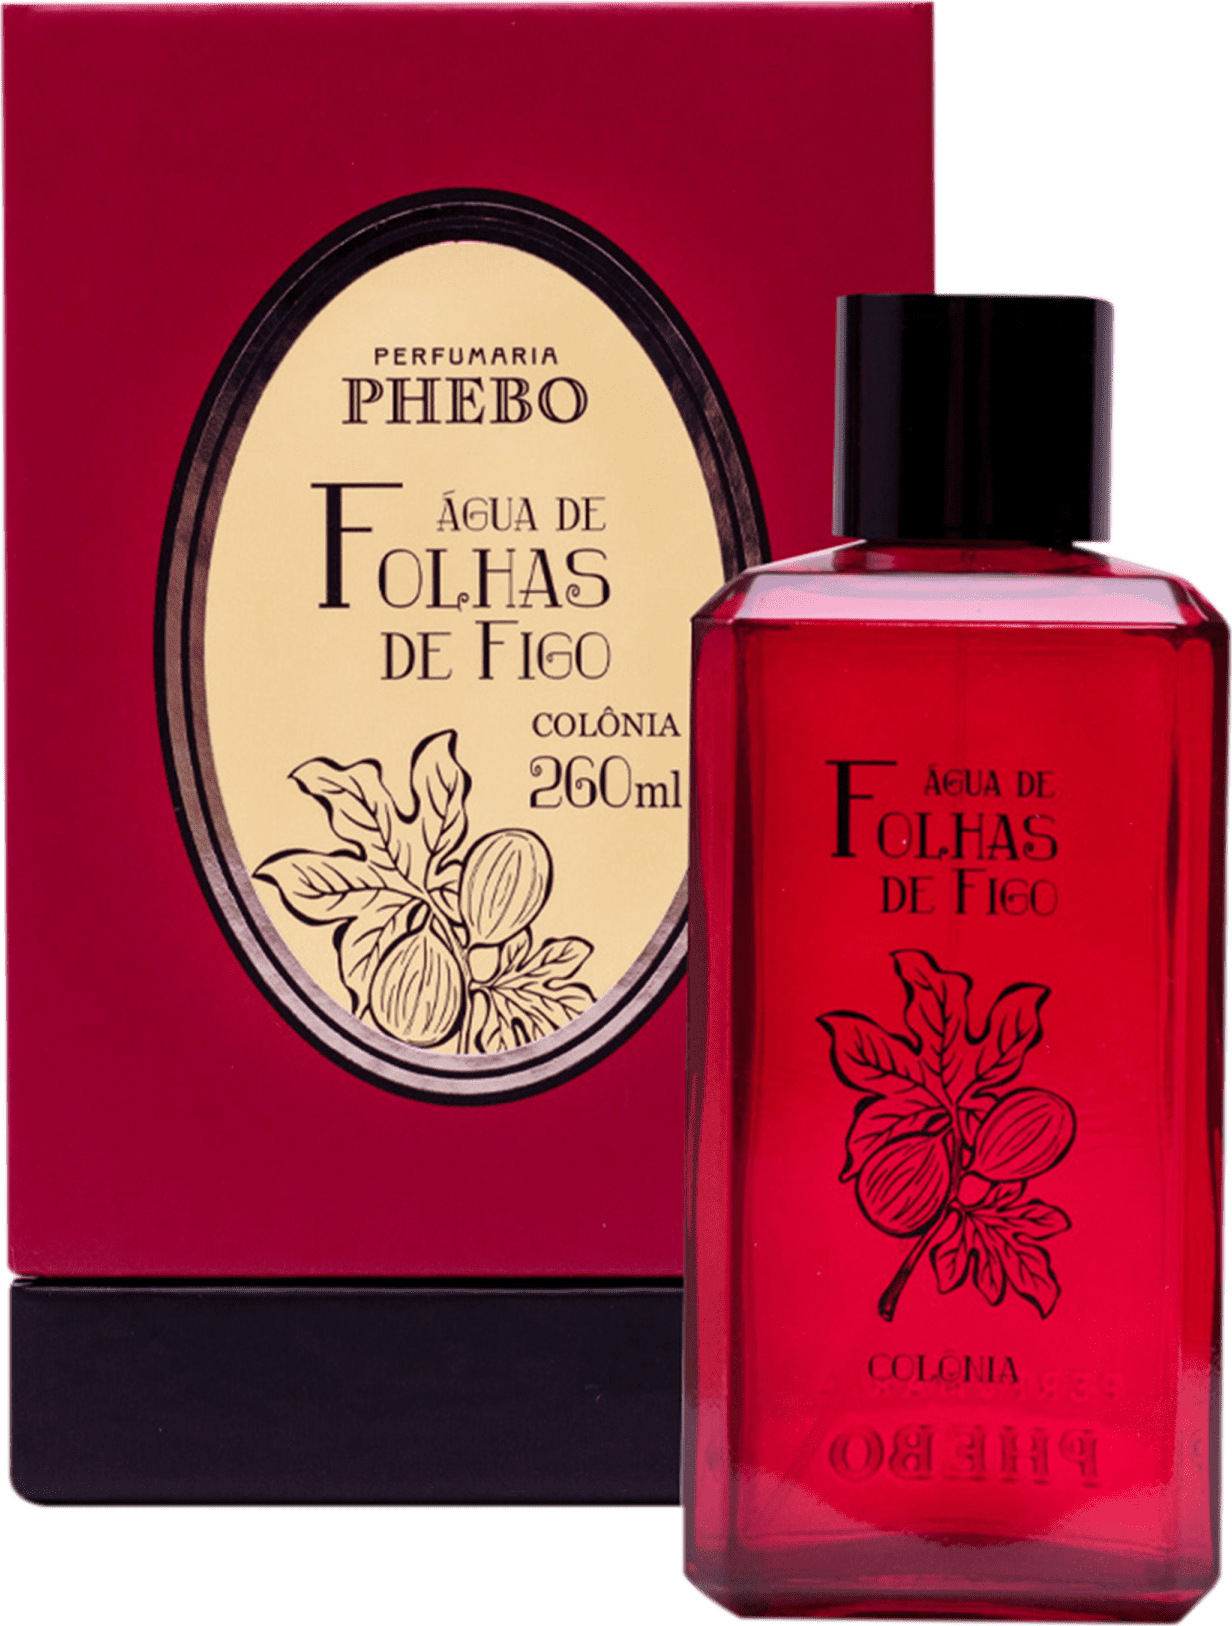 Perfume Água De Folhas De Figo Phebo Unissex Beautybox 0886